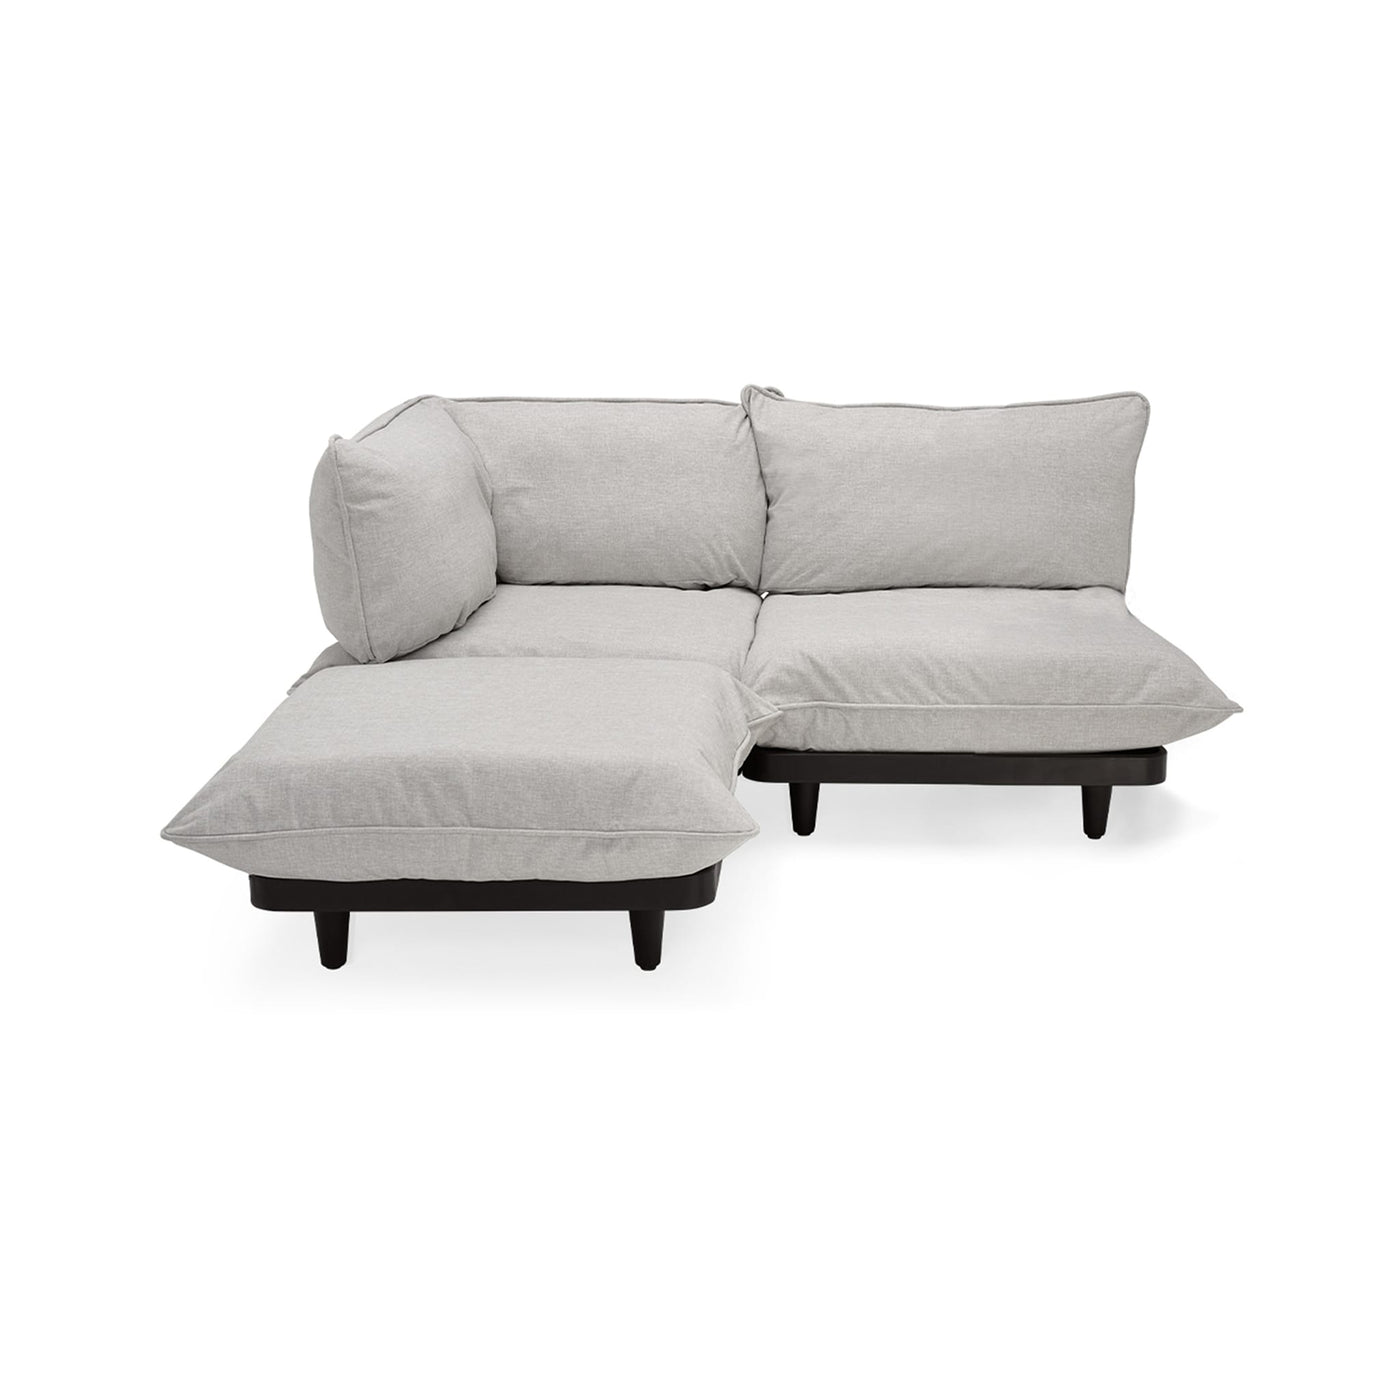 Sofa sectionnel Paletti : conçu sur mesure pour l'élégance extérieure. Matériaux haut de gamme, adaptabilité suprême et entretien facile pour un investissement dans le confort.